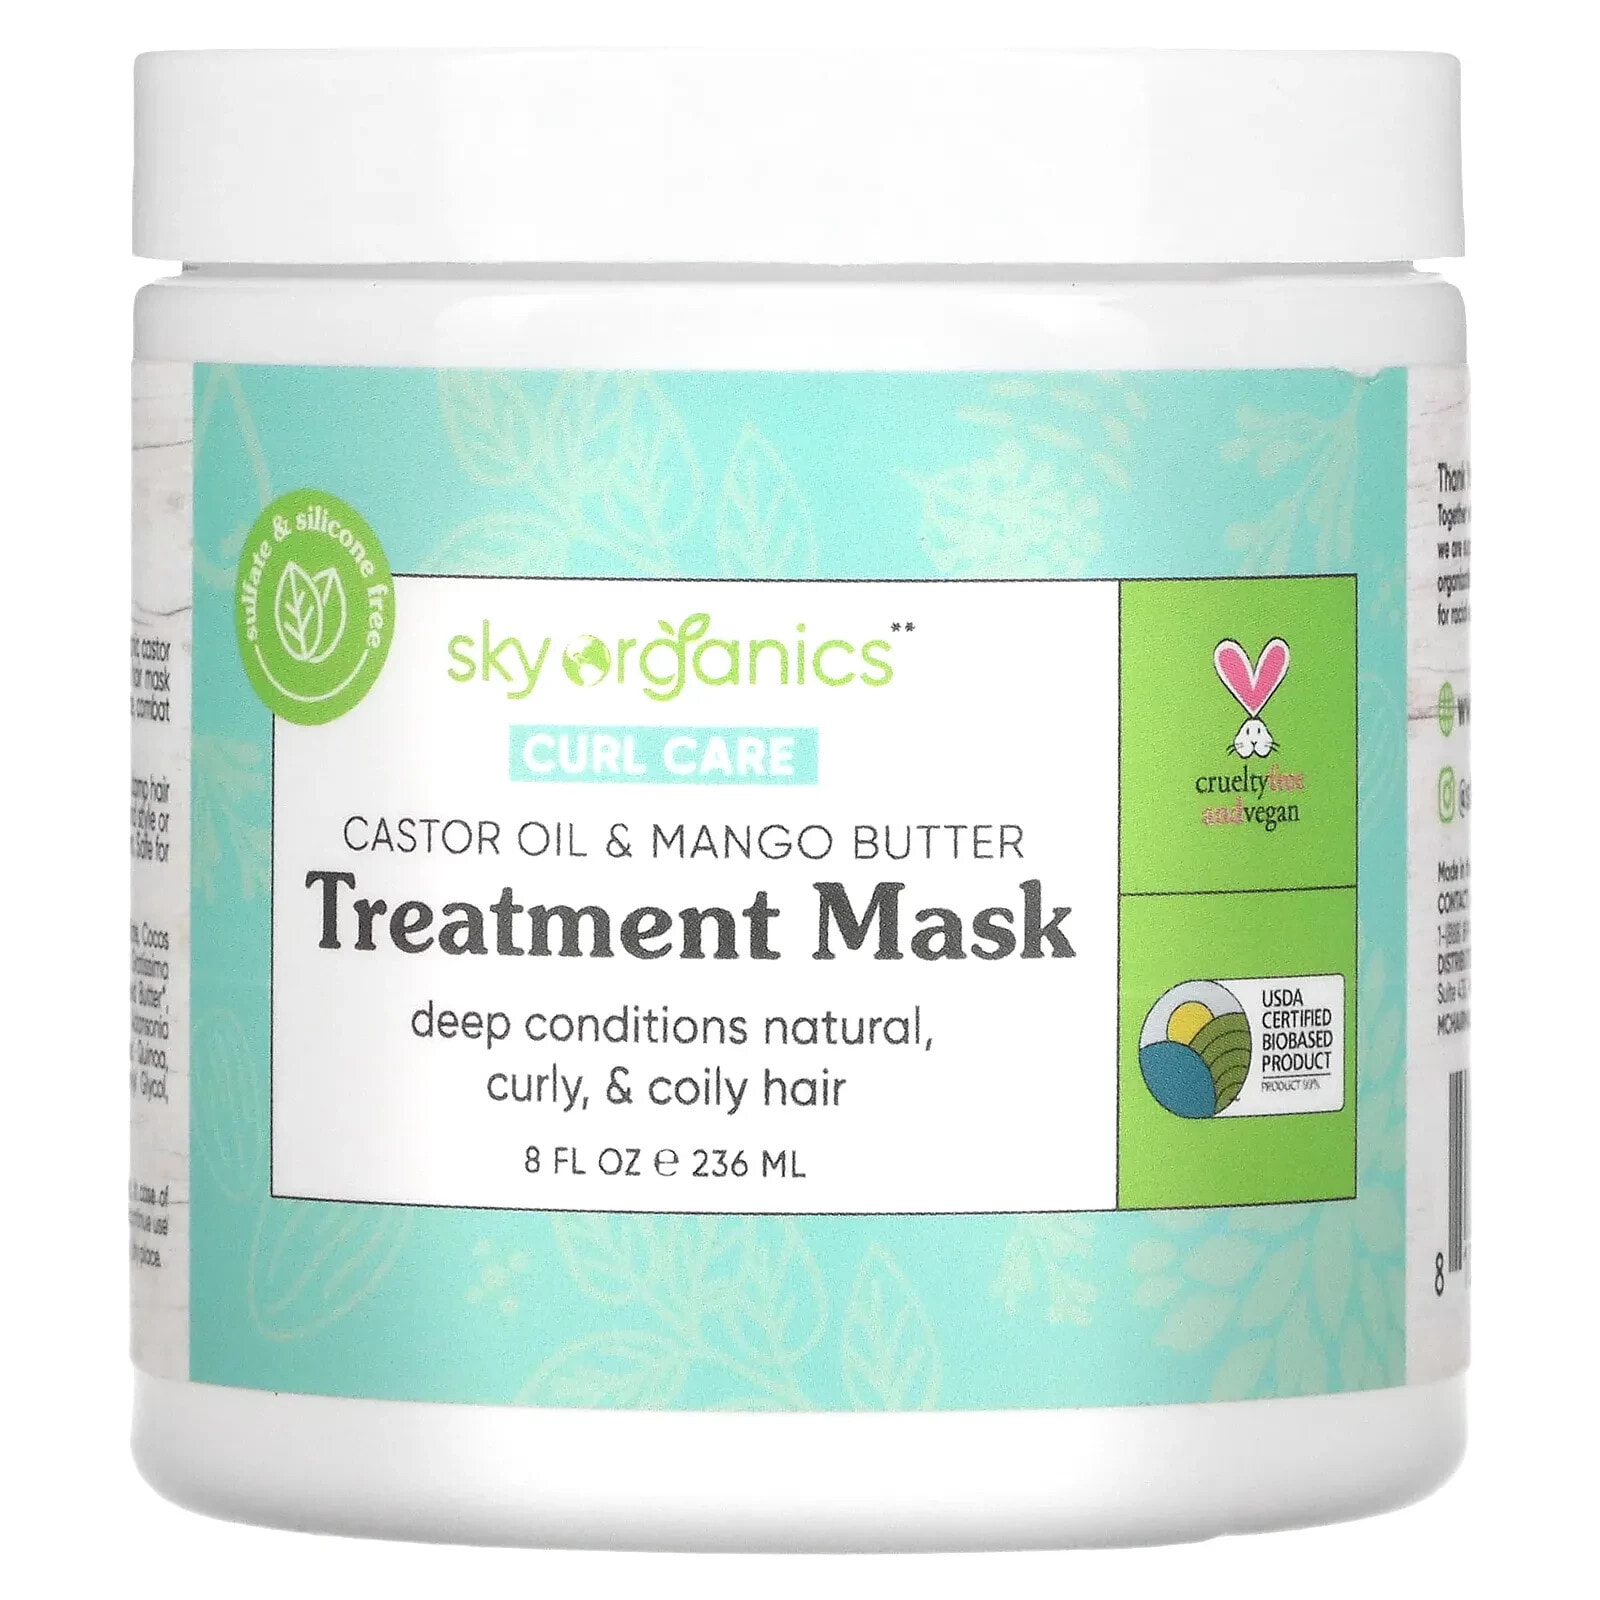 Sky Organics Curl Care Treatment Hair Mask Маска с касторовым и манго маслами для кудрявых волос  236 мл